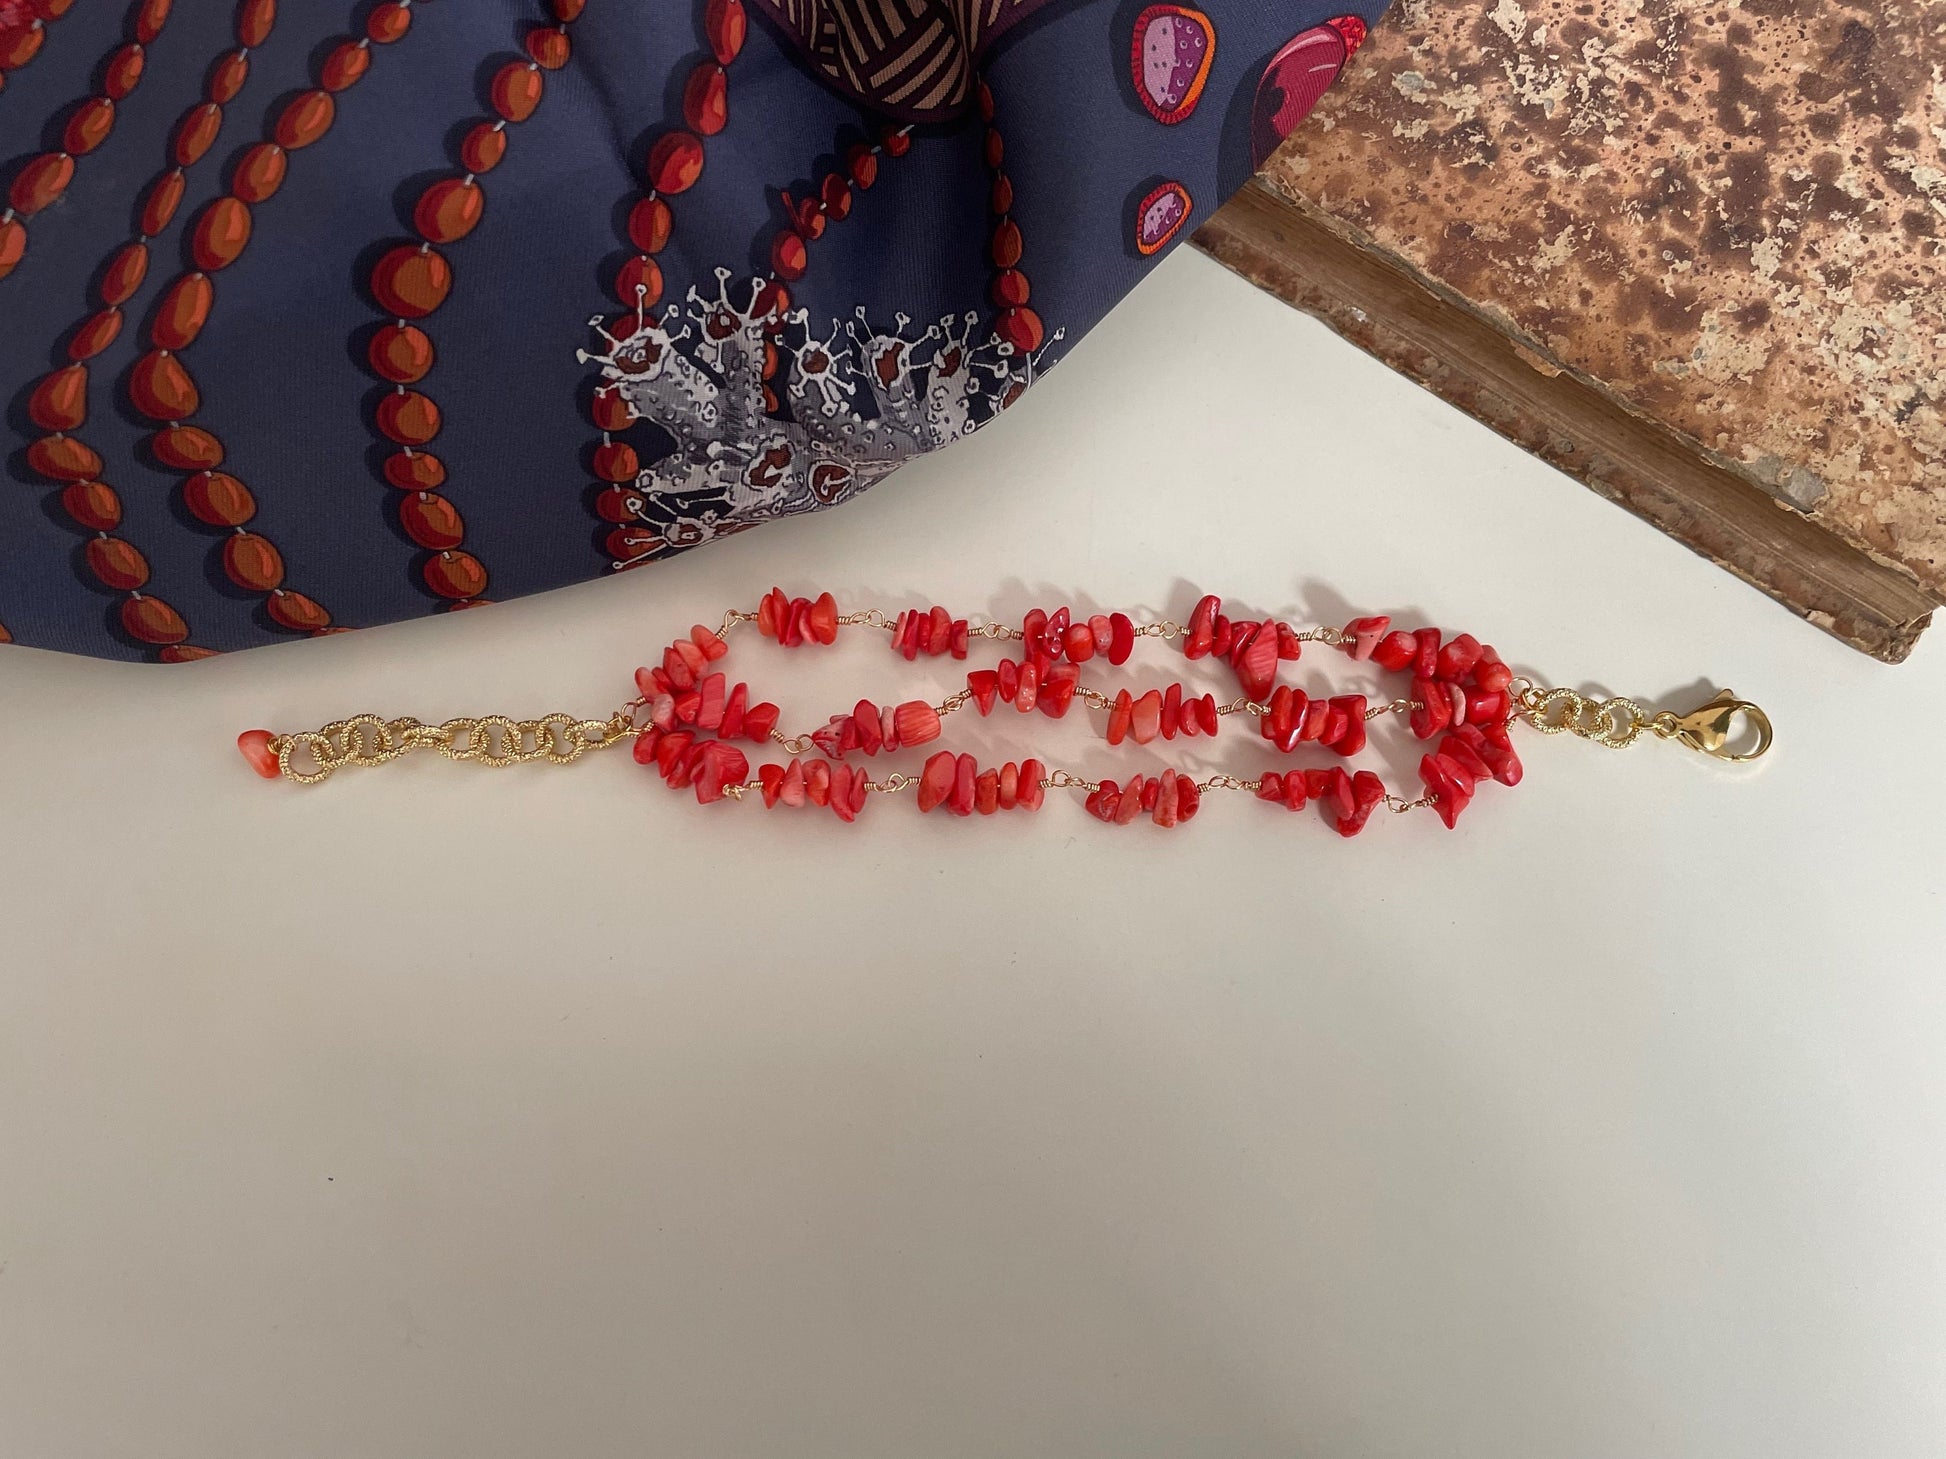 Braccialetto rosario con corallo, regalo per lei.